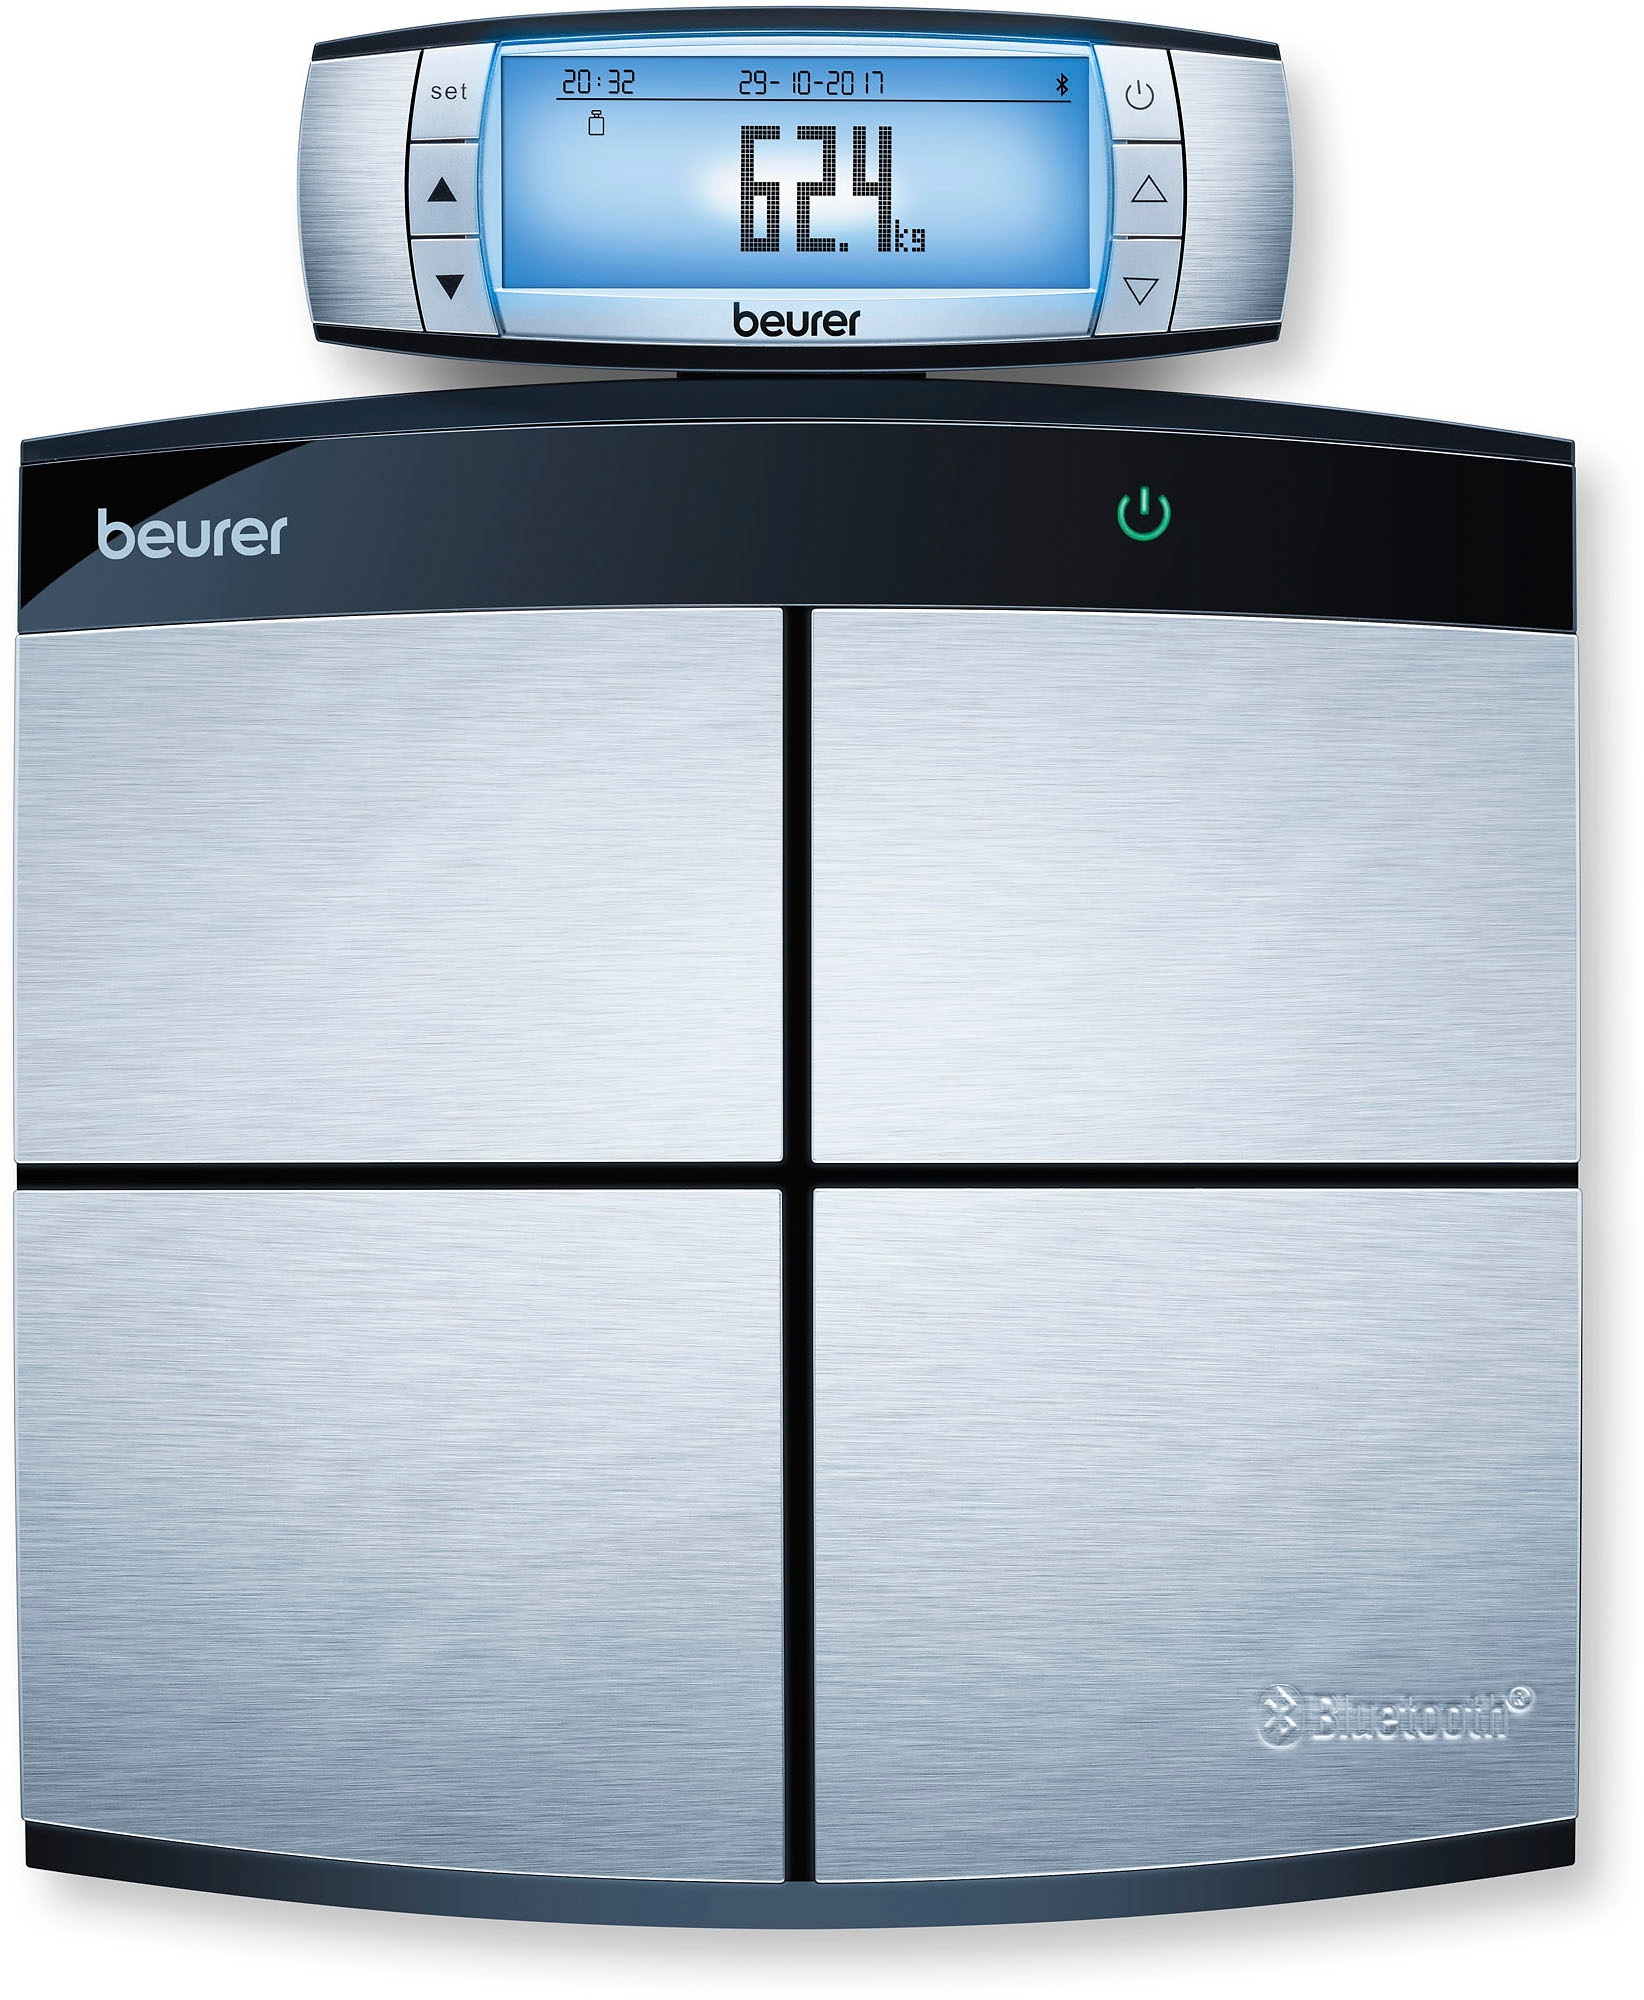 BEURER Körper-Analyse-Waage »BF 105 Body Complete«, Innovative Vernetzung zwischen PC, Smartphone und Waage